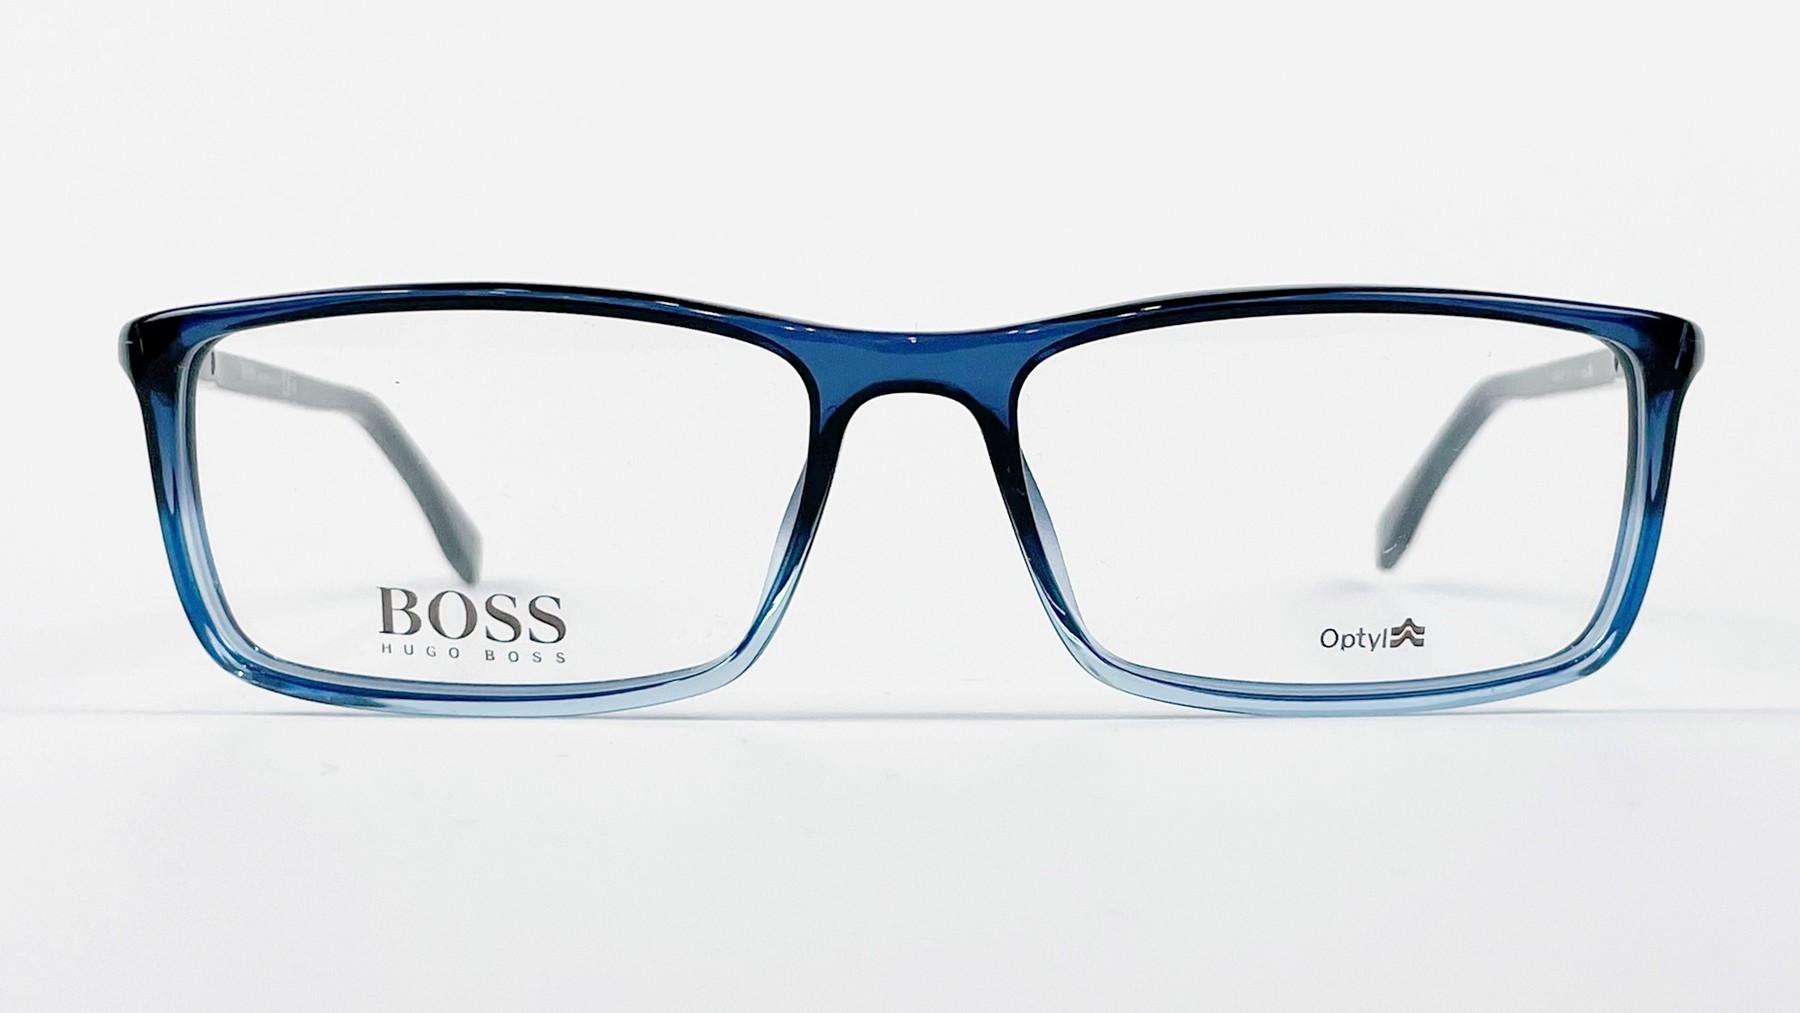 HUGO BOSS 0680 TU4, Korean glasses, sunglasses, eyeglasses, glasses